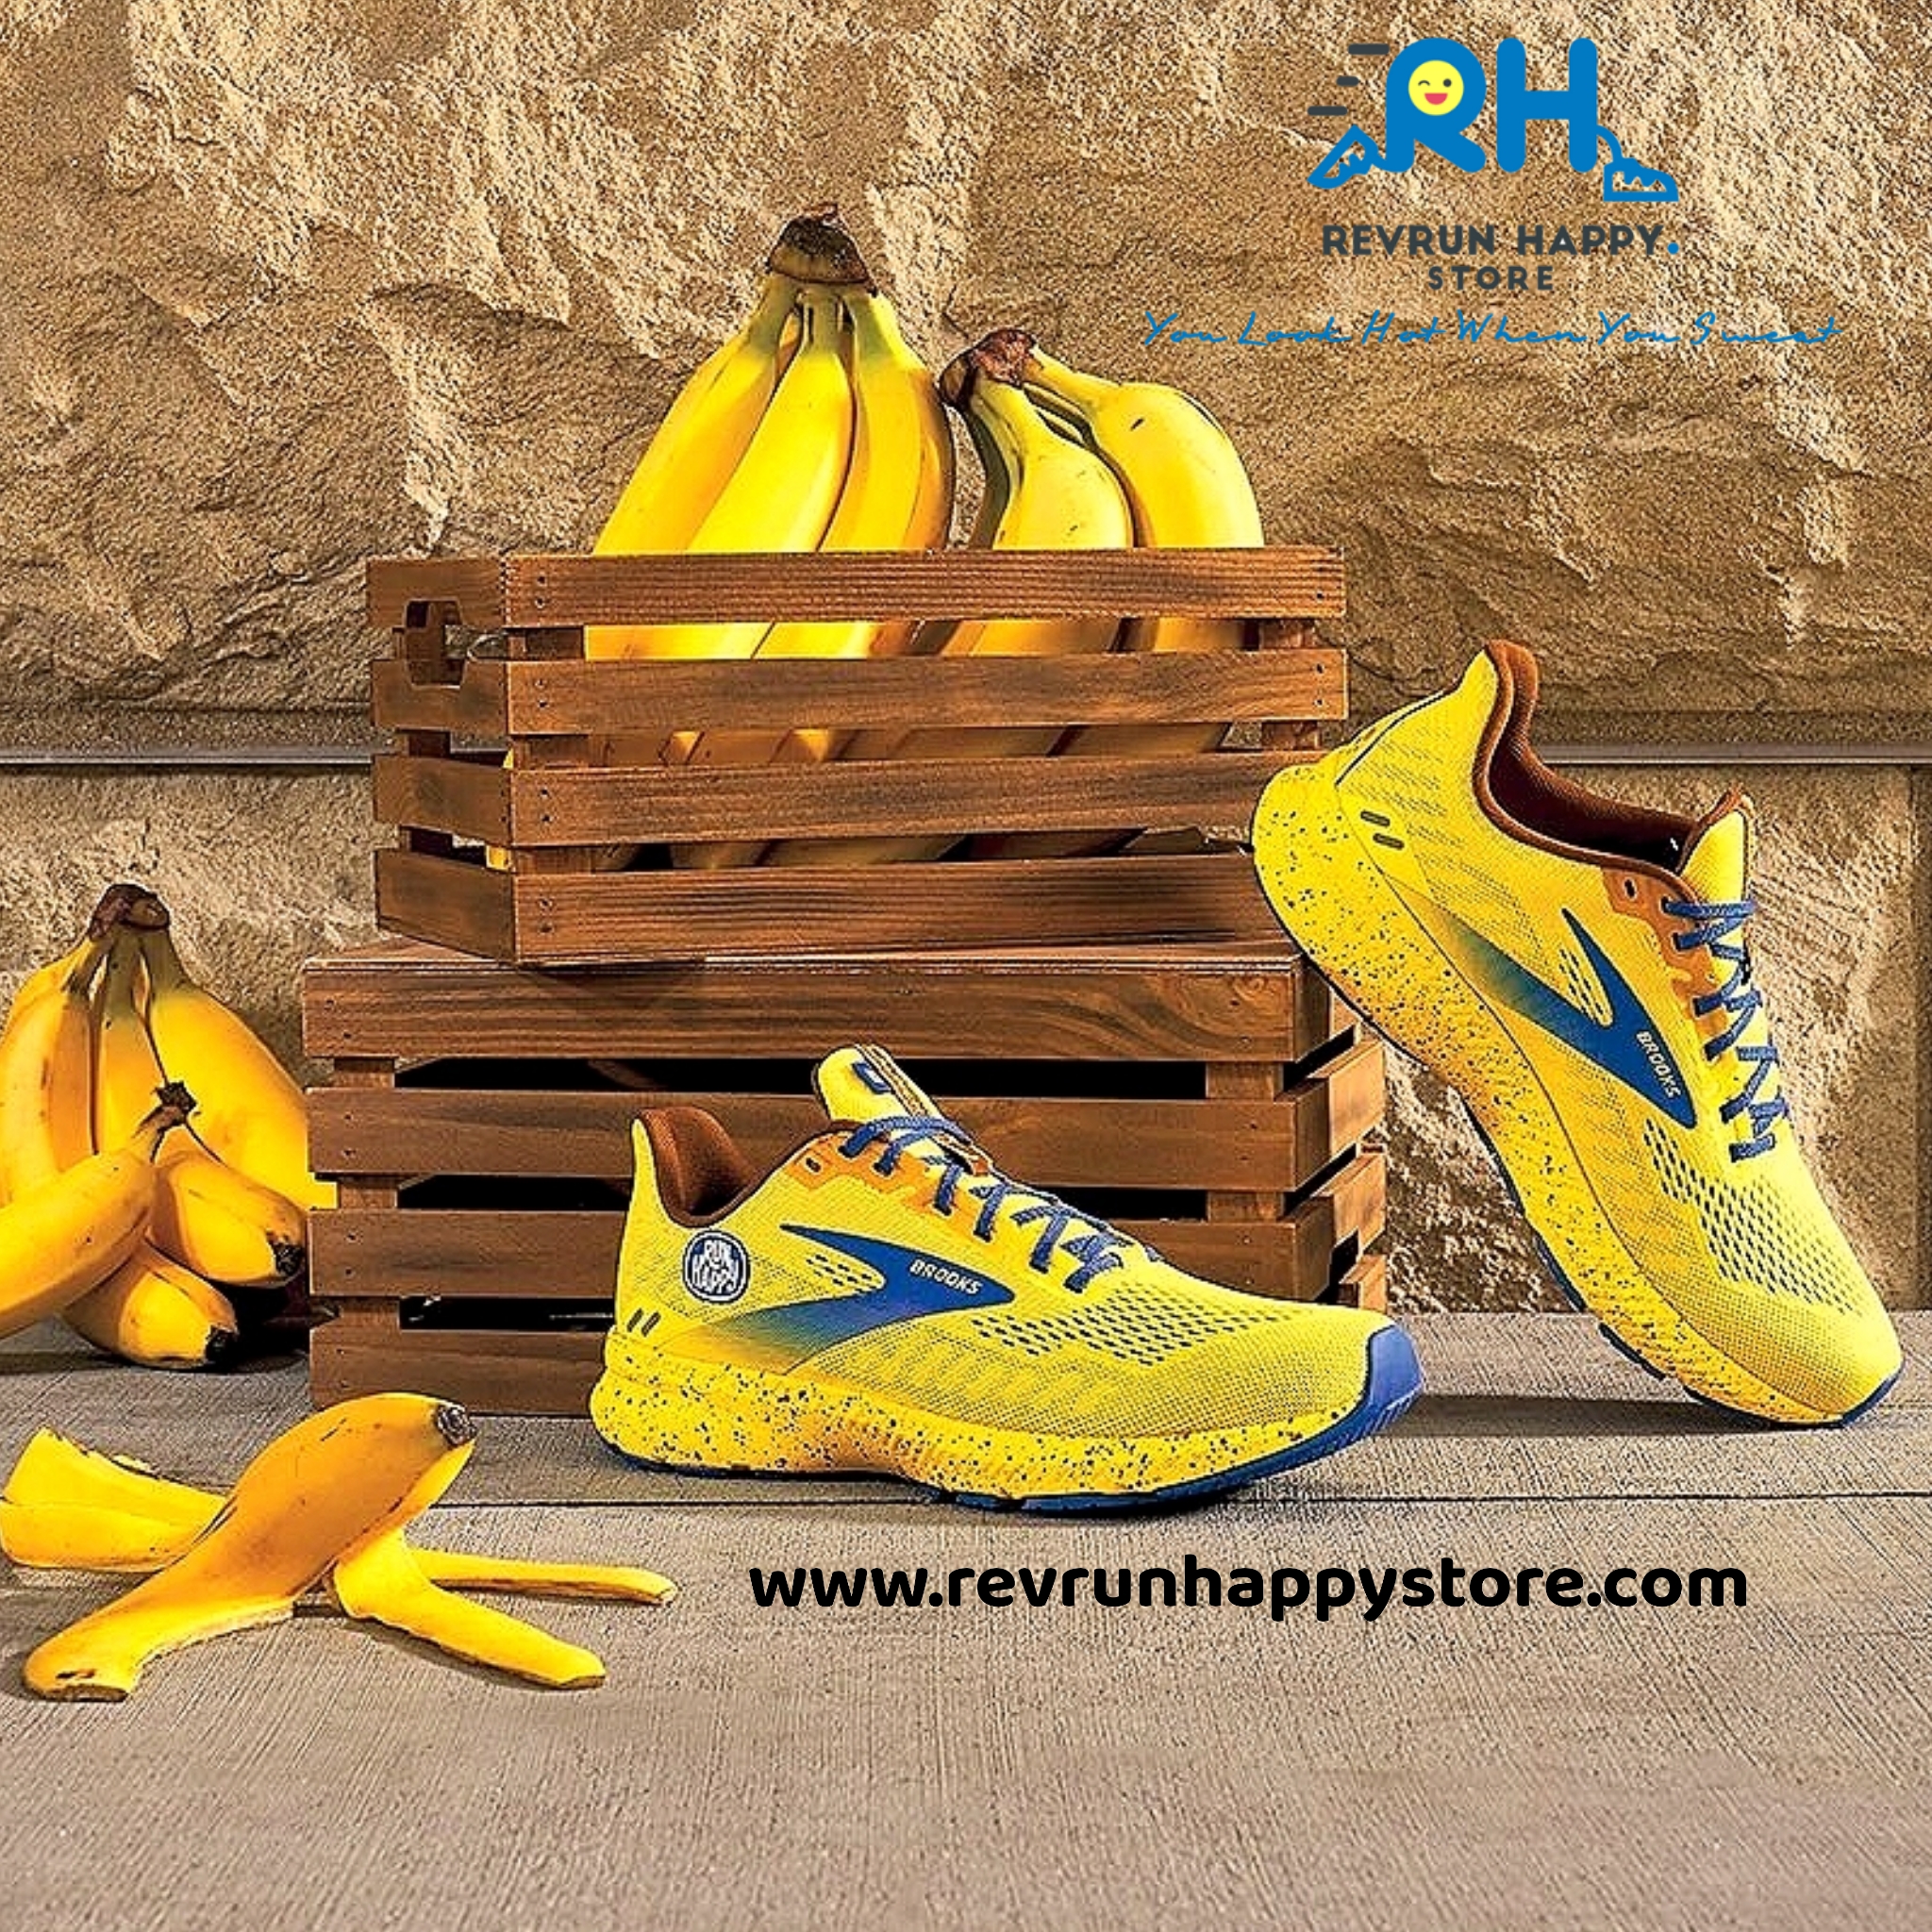 Run Happy Store  Revolution Run Borneo, Malaysia